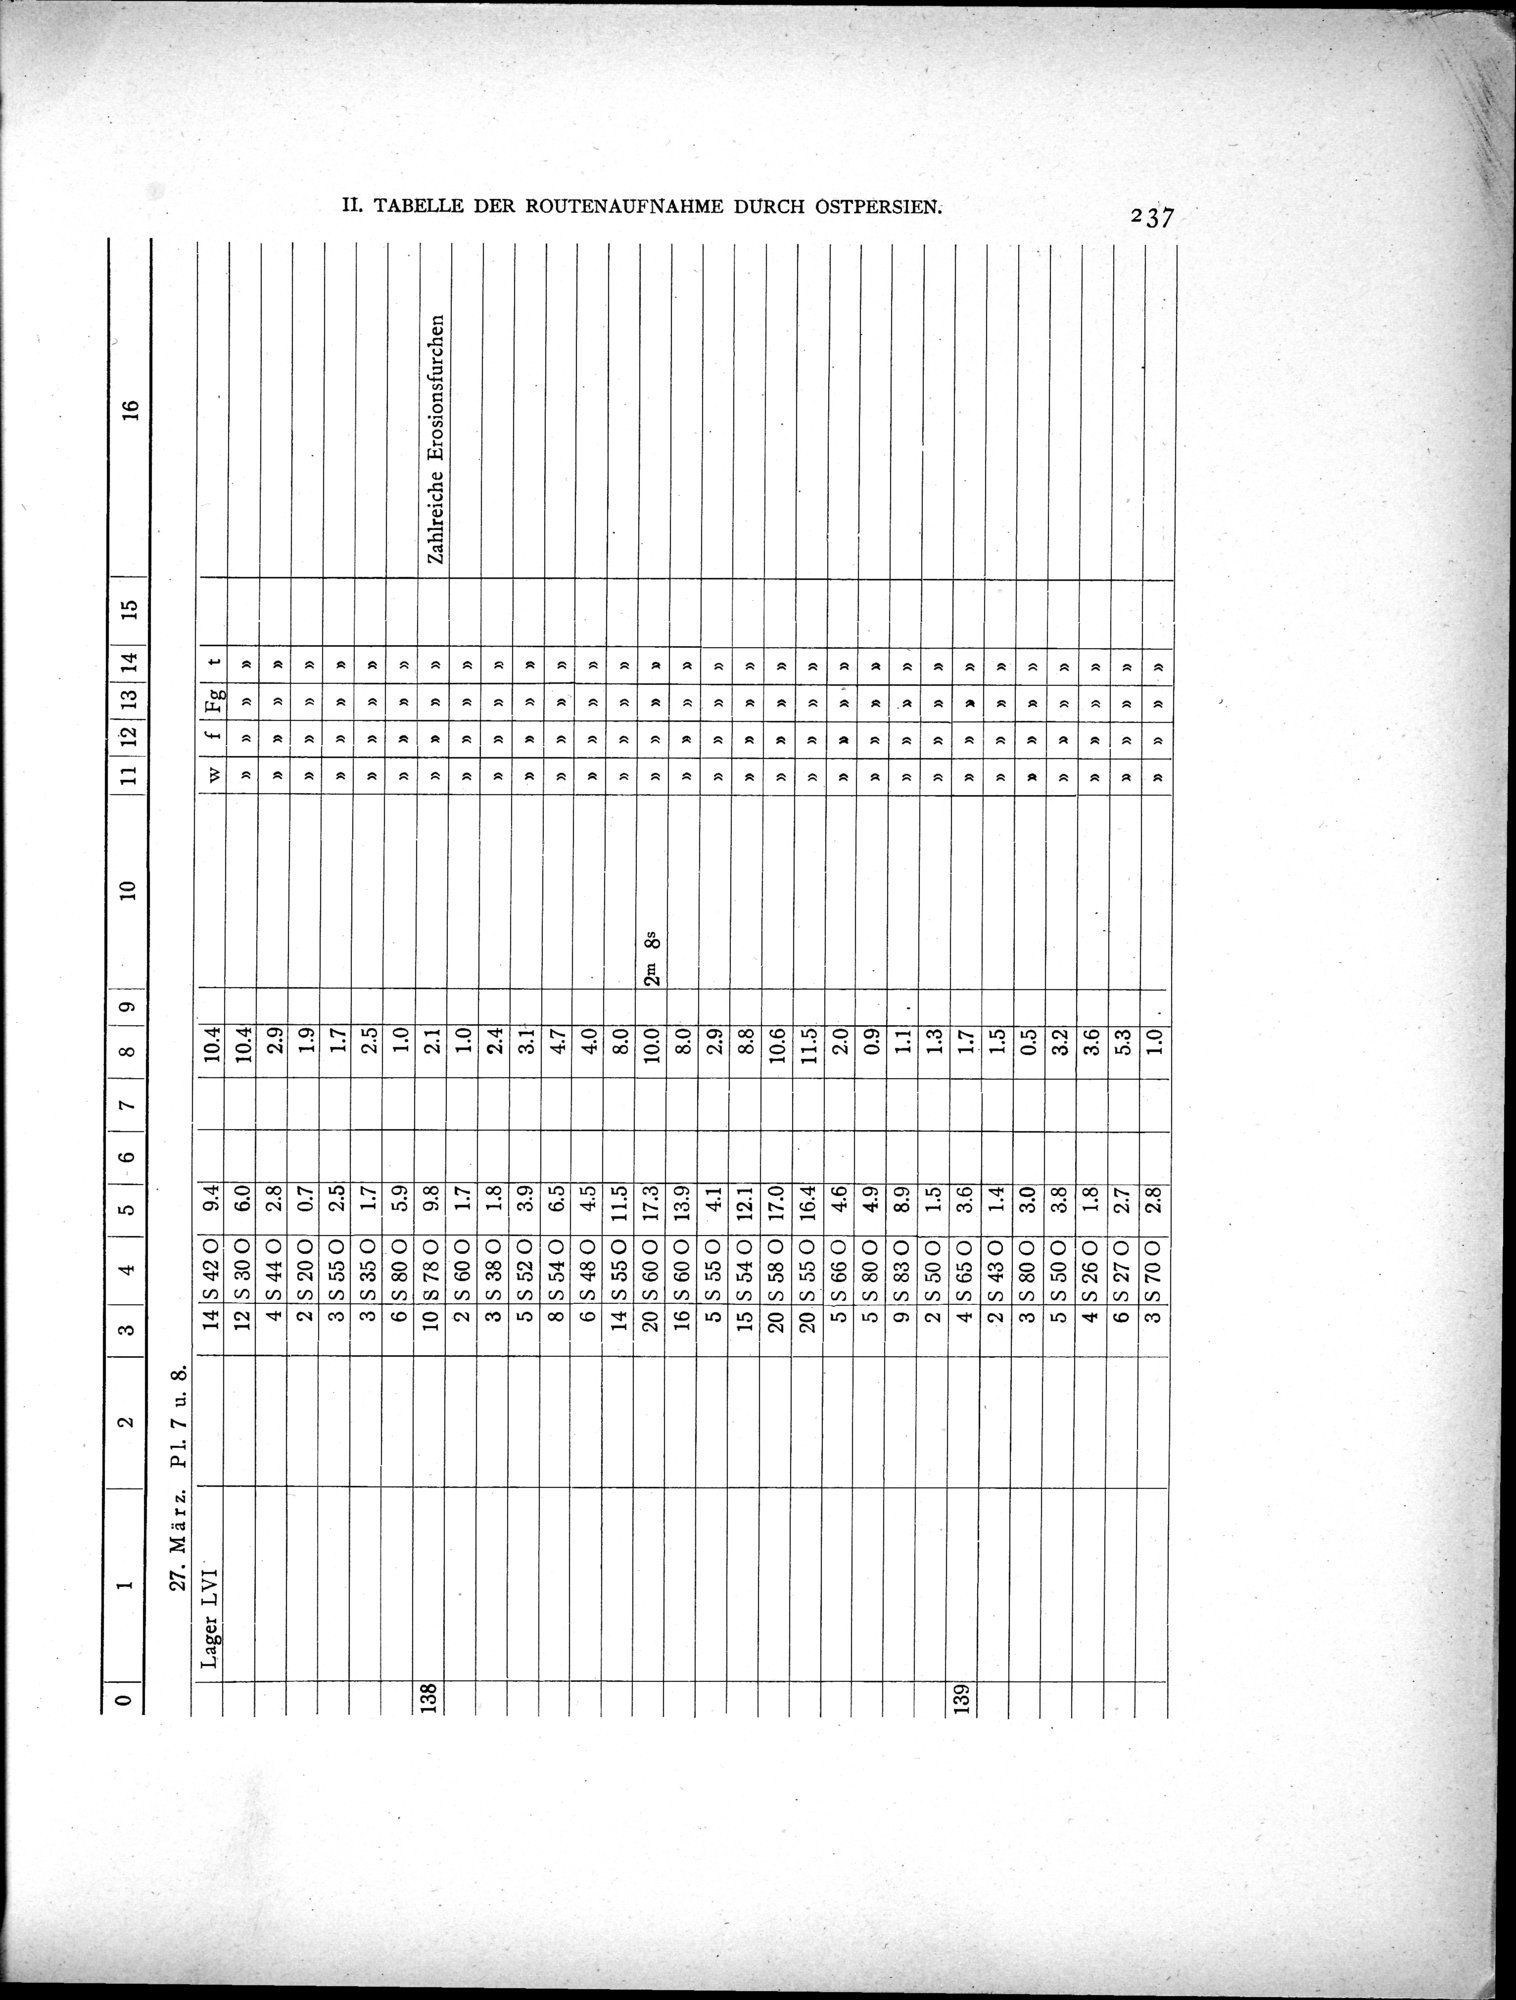 Eine Routenaufnahme durch Ostpersien : vol.2 / Page 307 (Grayscale High Resolution Image)